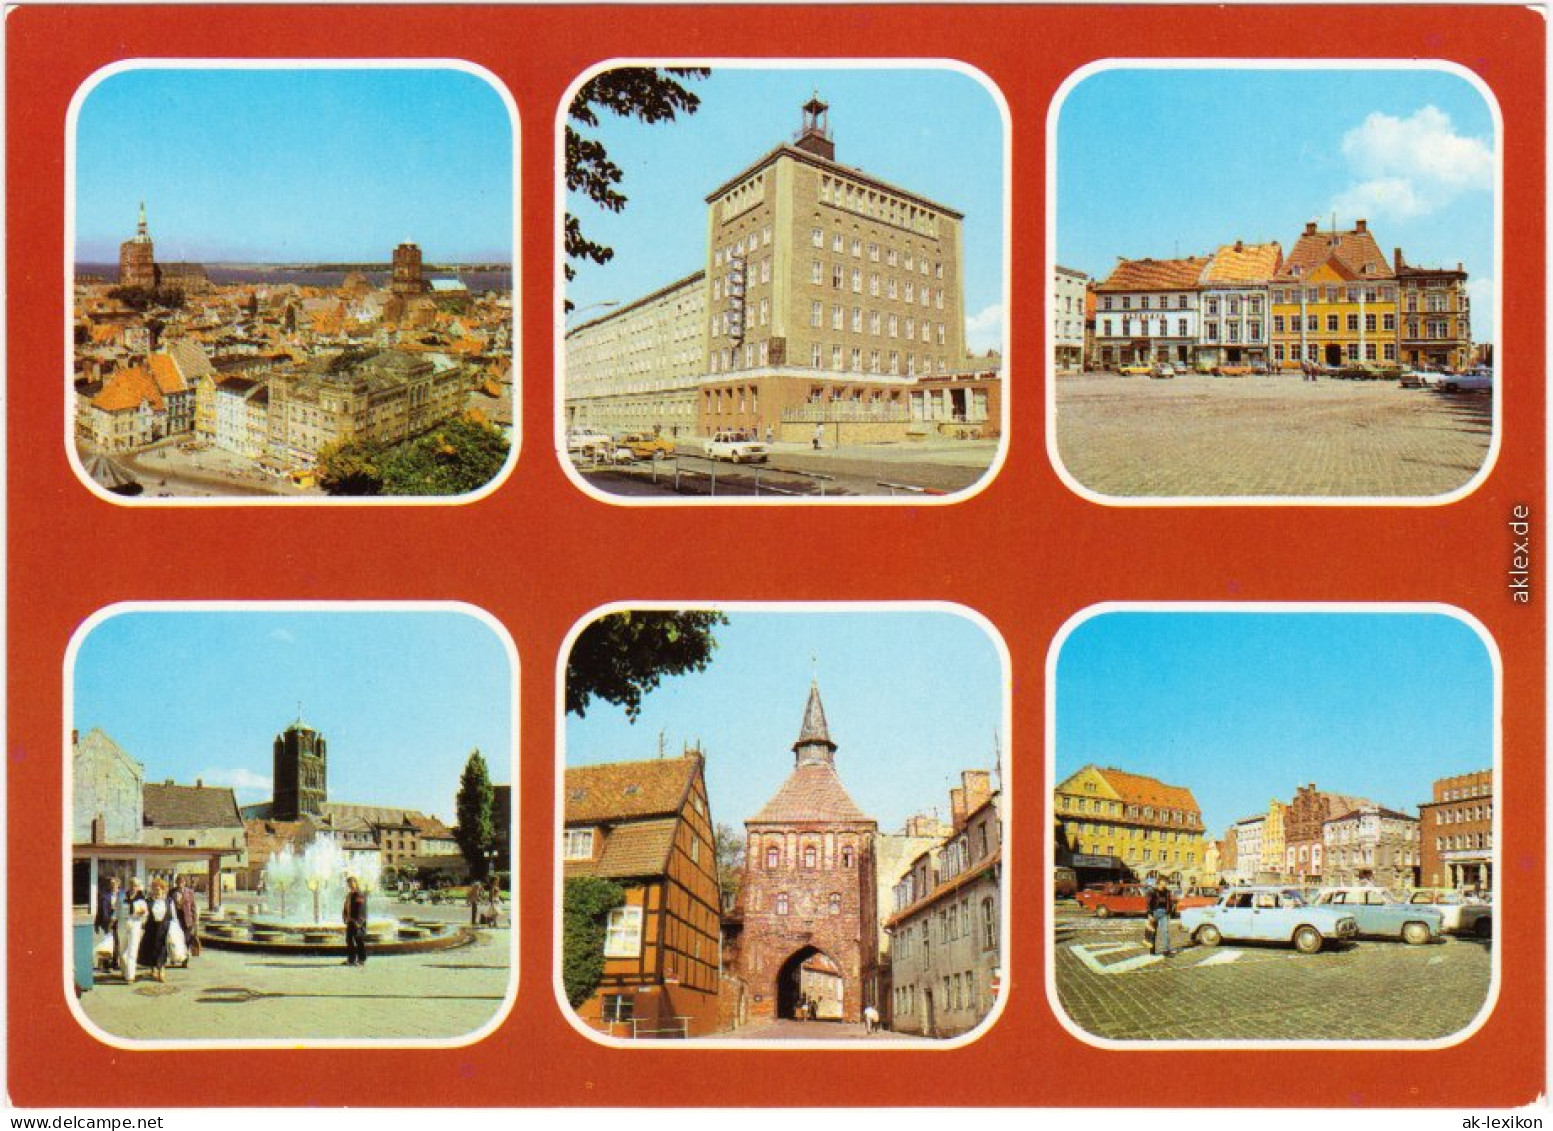 Stralsund Blick Vom Turm Der Marienkirche, Hotel "Baltic", Am Alten Markt 1985 - Stralsund